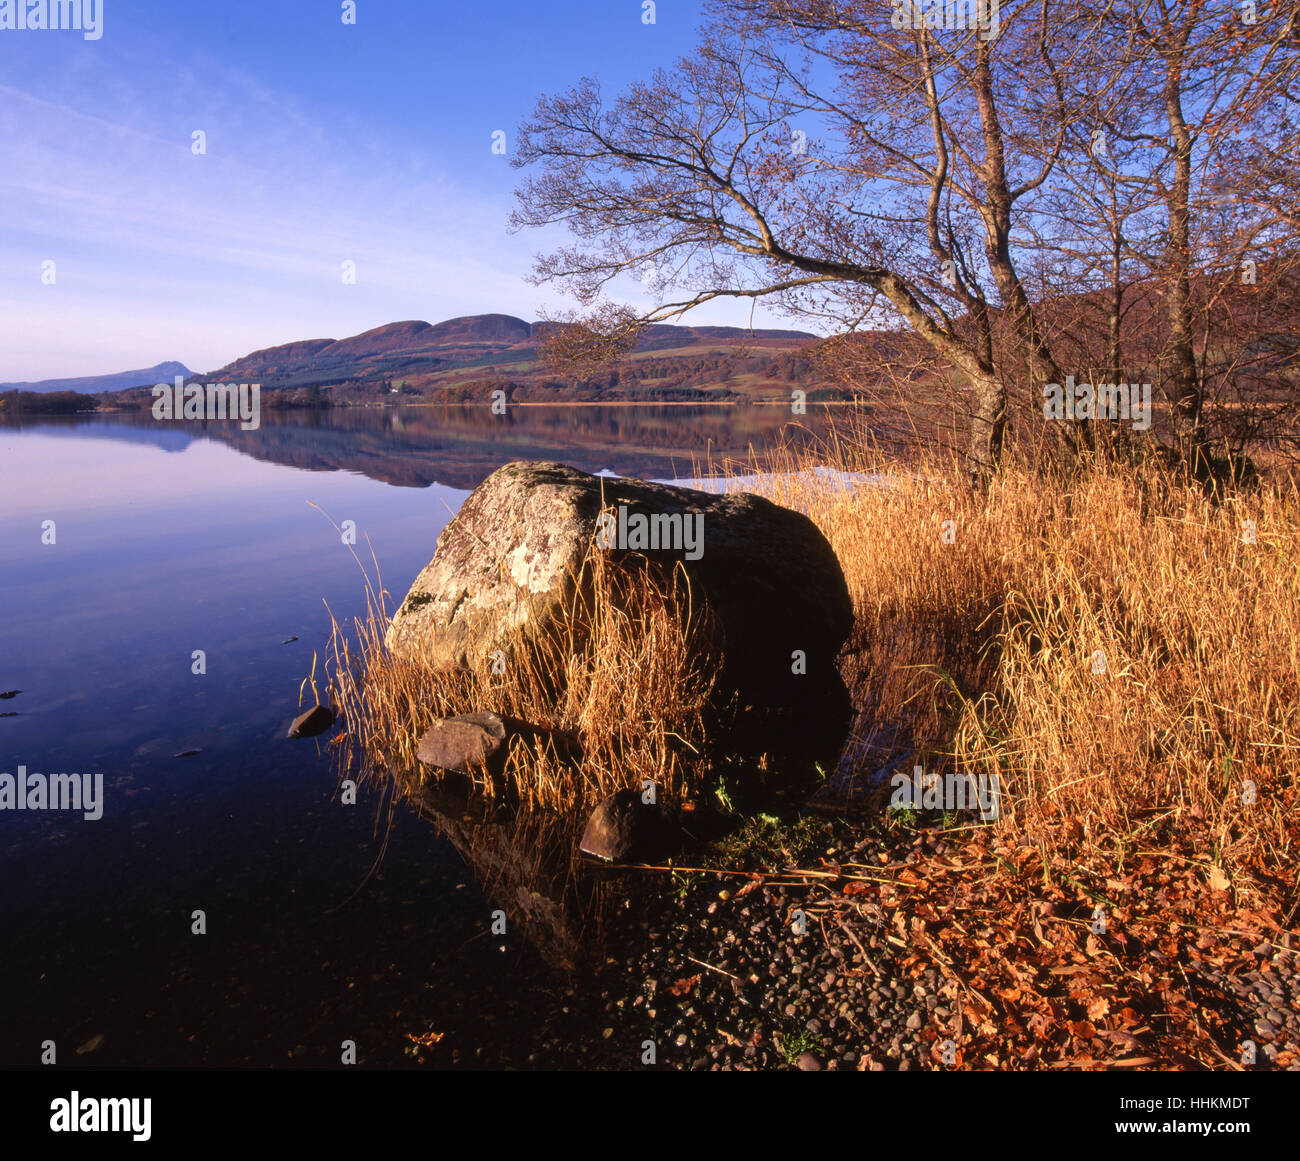 Otoño pacífica escena en el lago de Menteith, Trossachs. Foto de stock